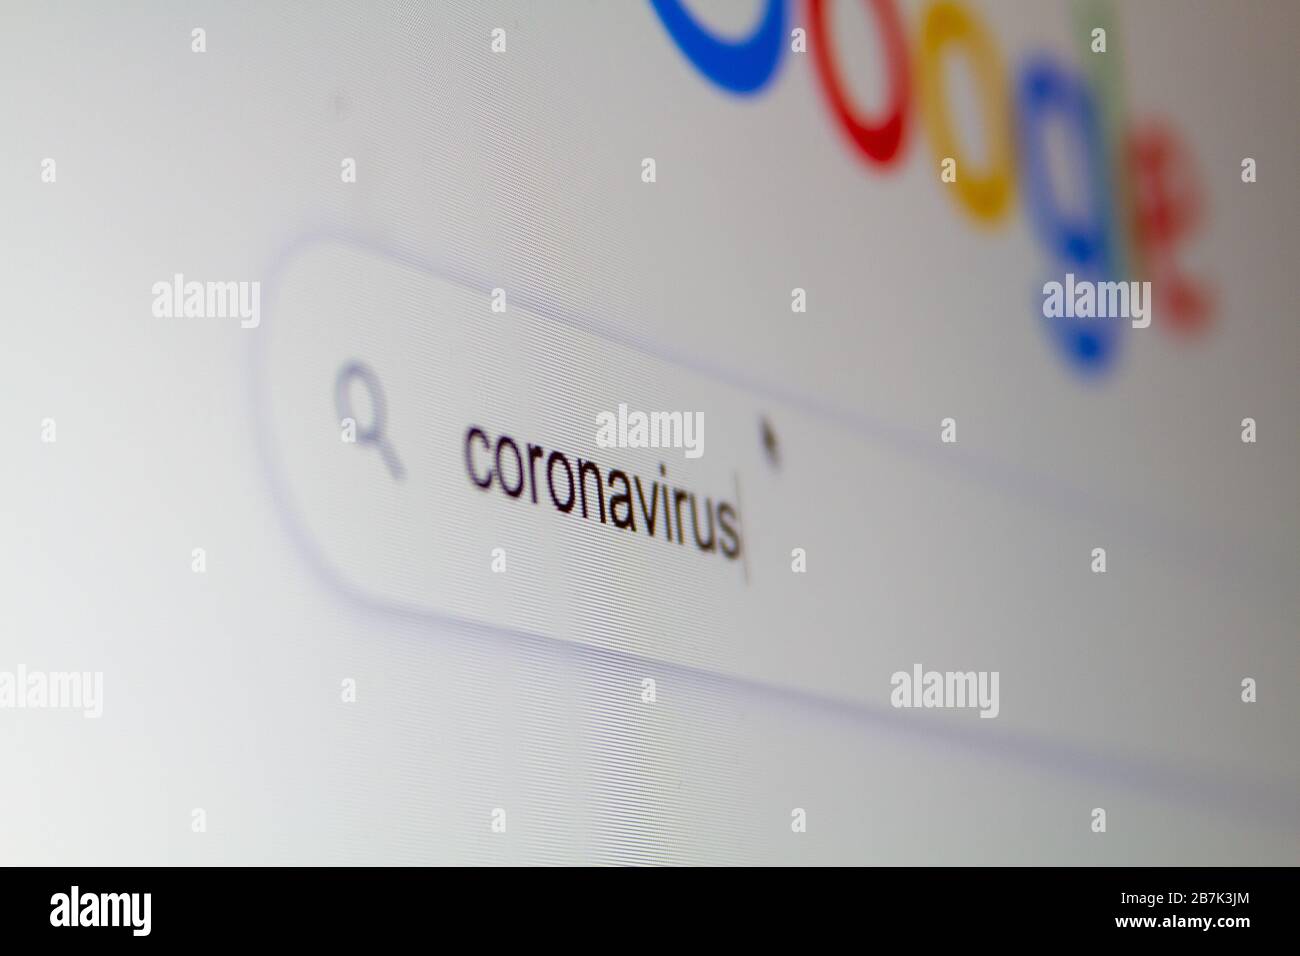 Cerca 'coronavirus' in un motore di ricerca su internet su un computer. Foto Stock